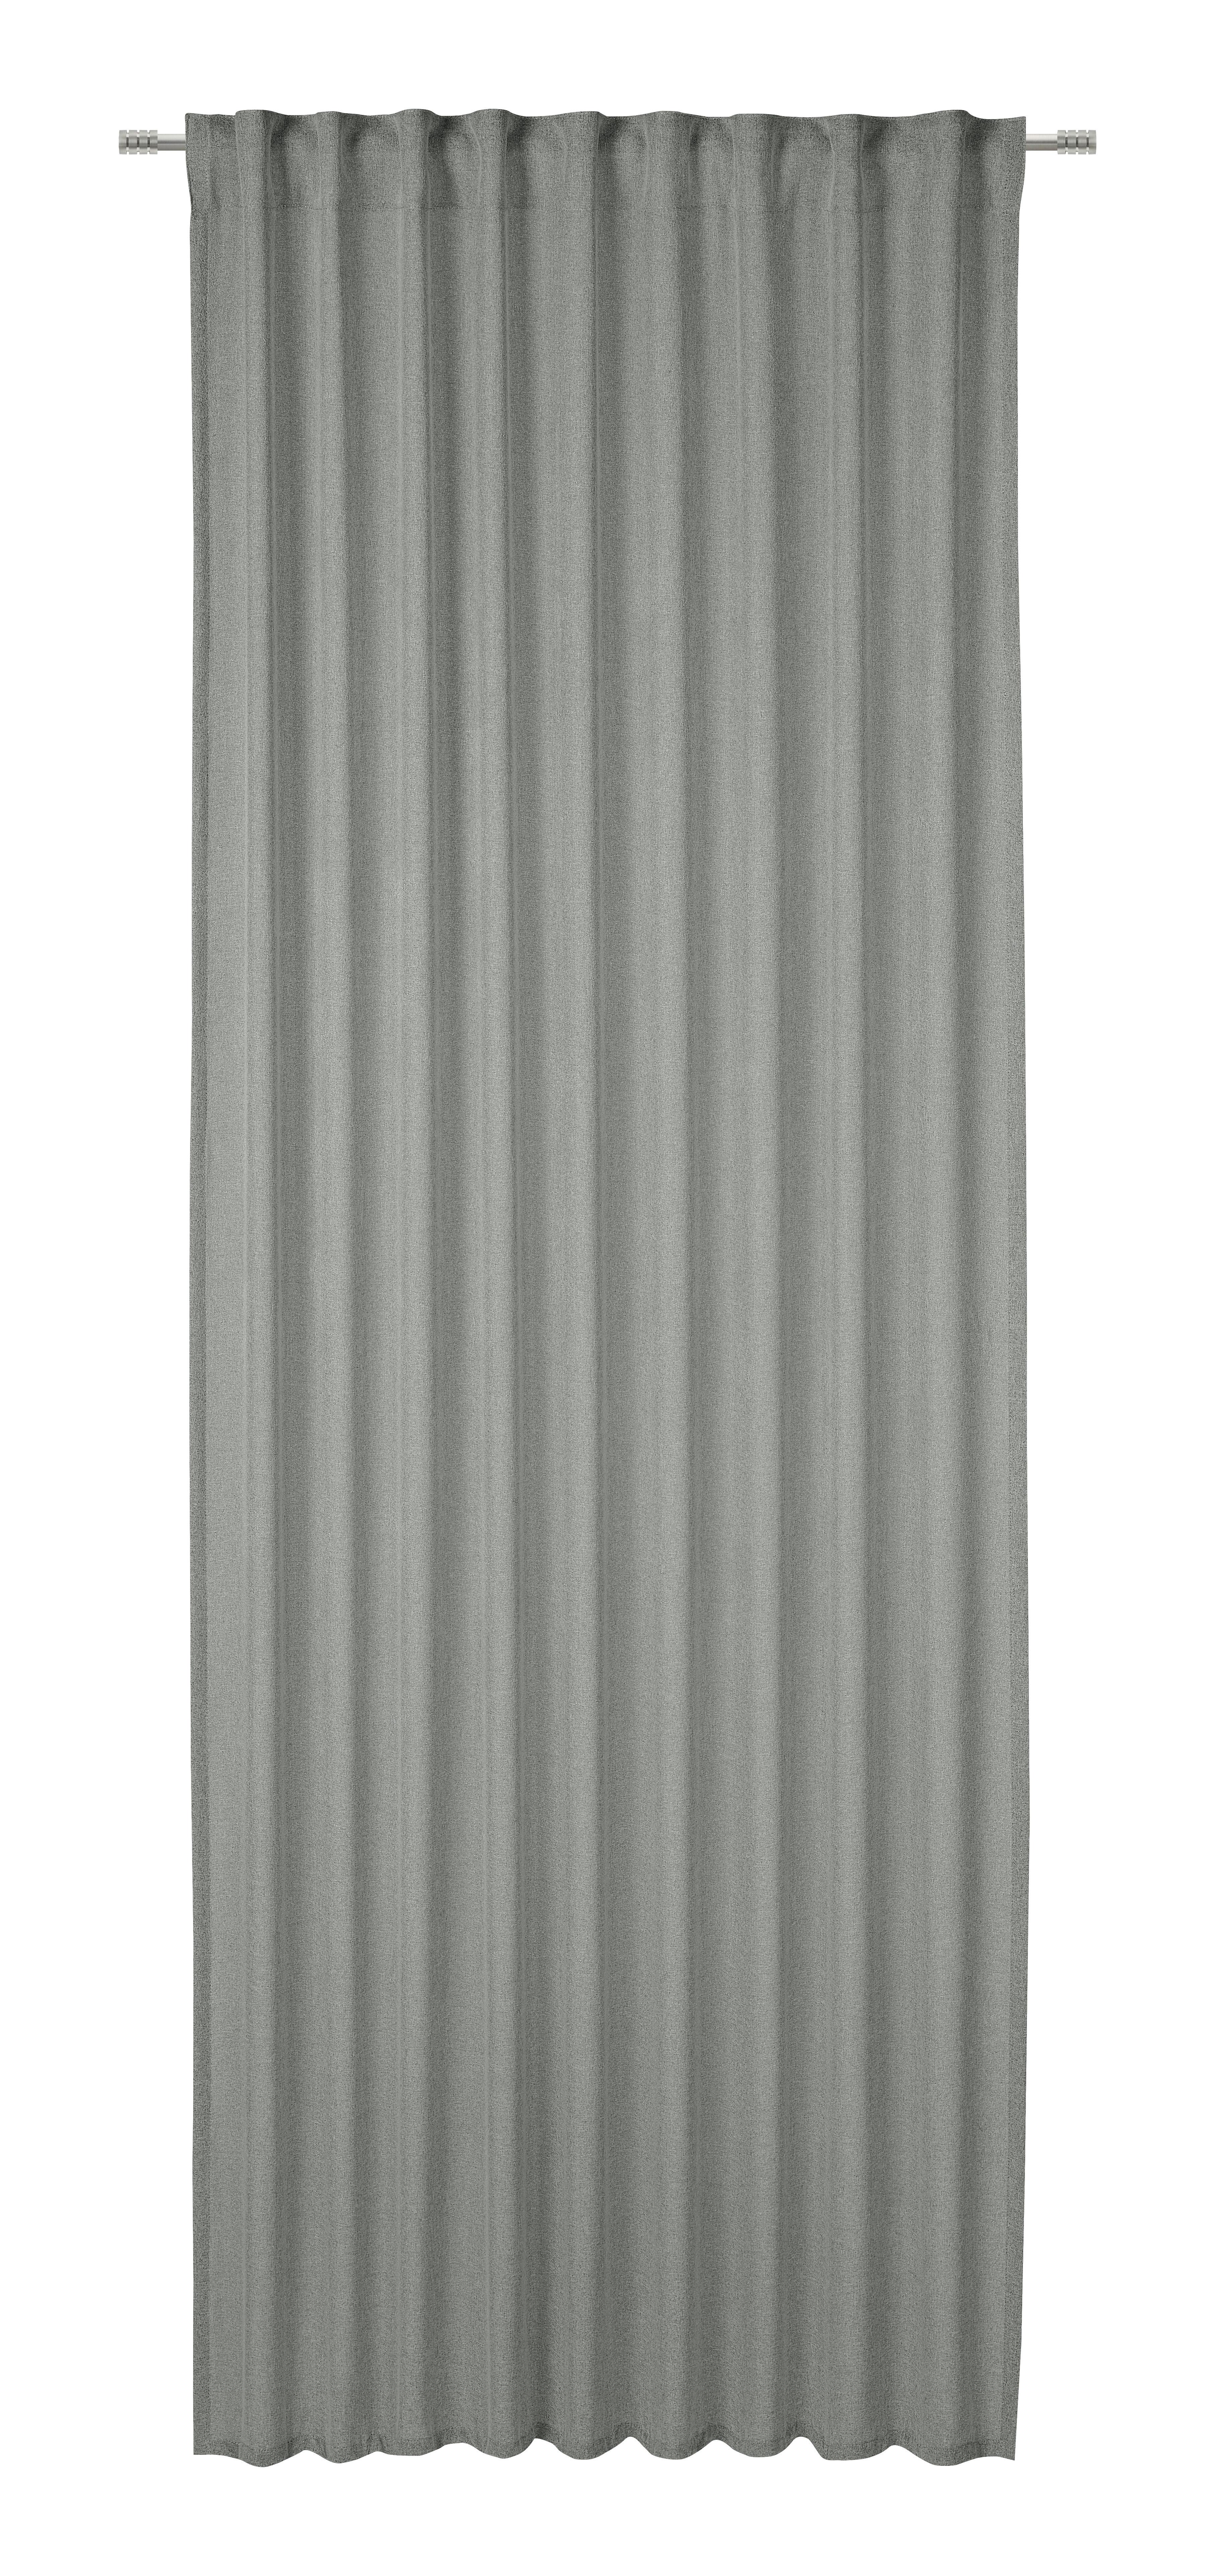 Gotova Zavjesa 135/245 Cm Ben - siva, Modern, tekstil (135/245cm) - Modern Living